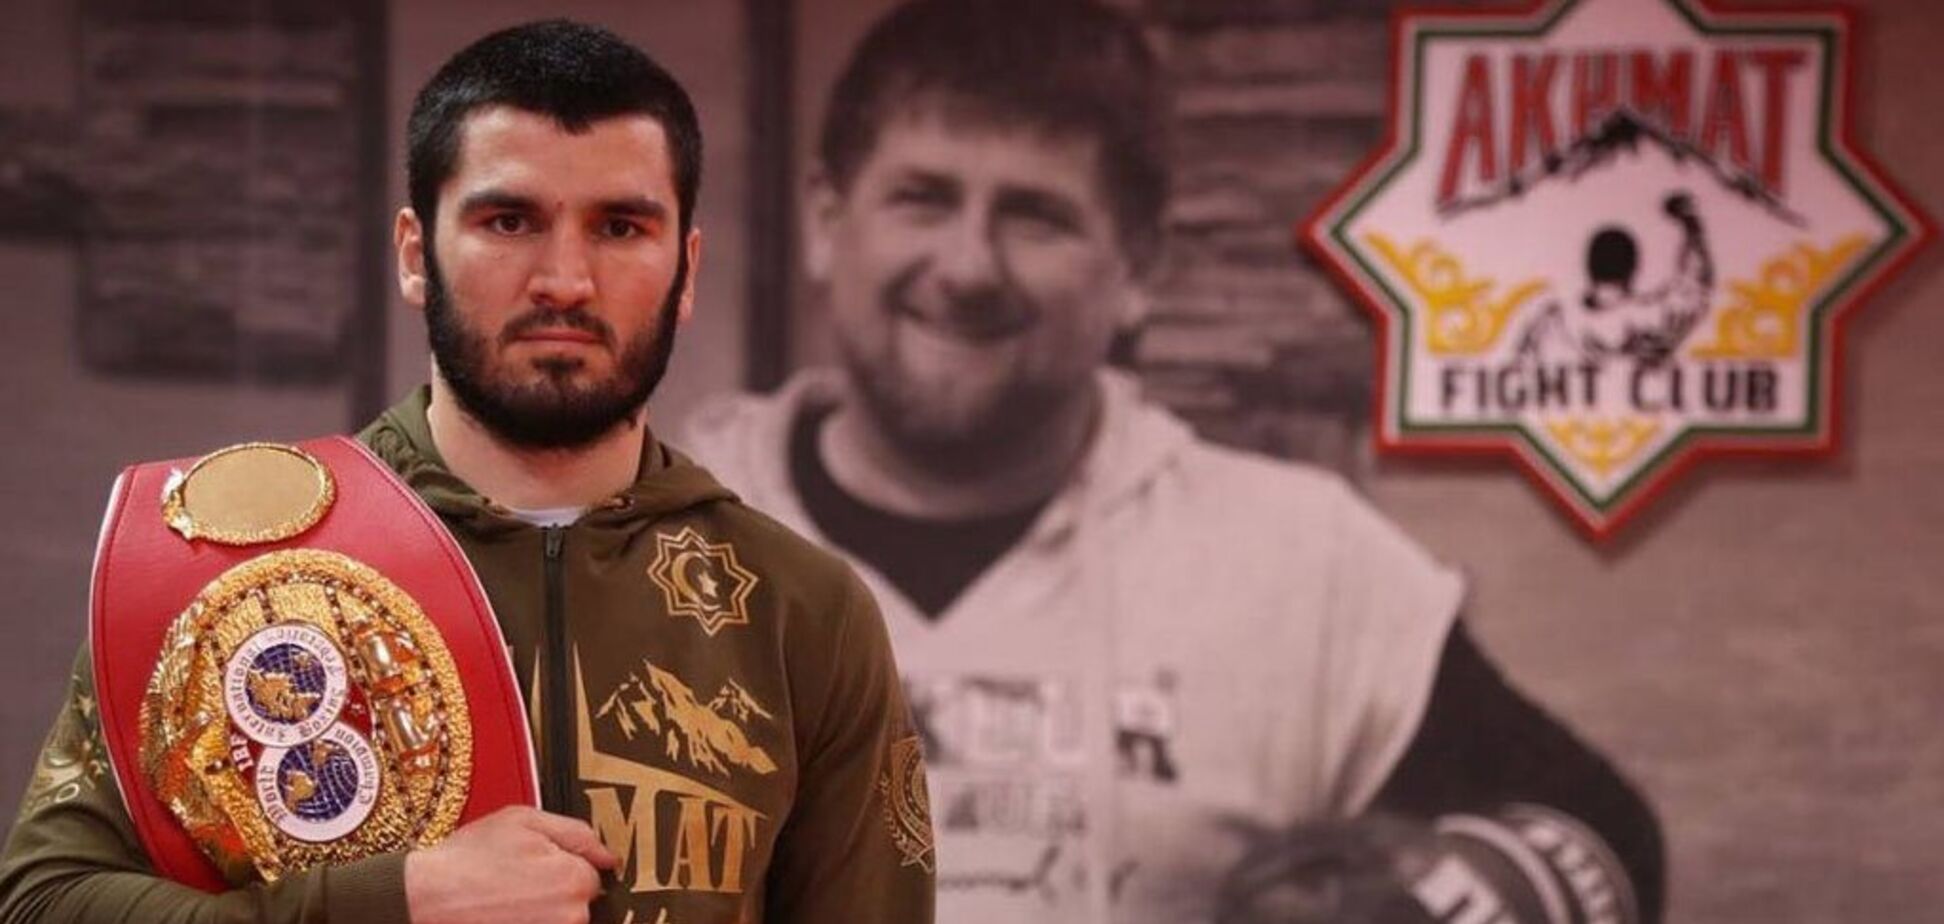 Украинский чемпион проведет титульный супербой с русским боксером: названа дата